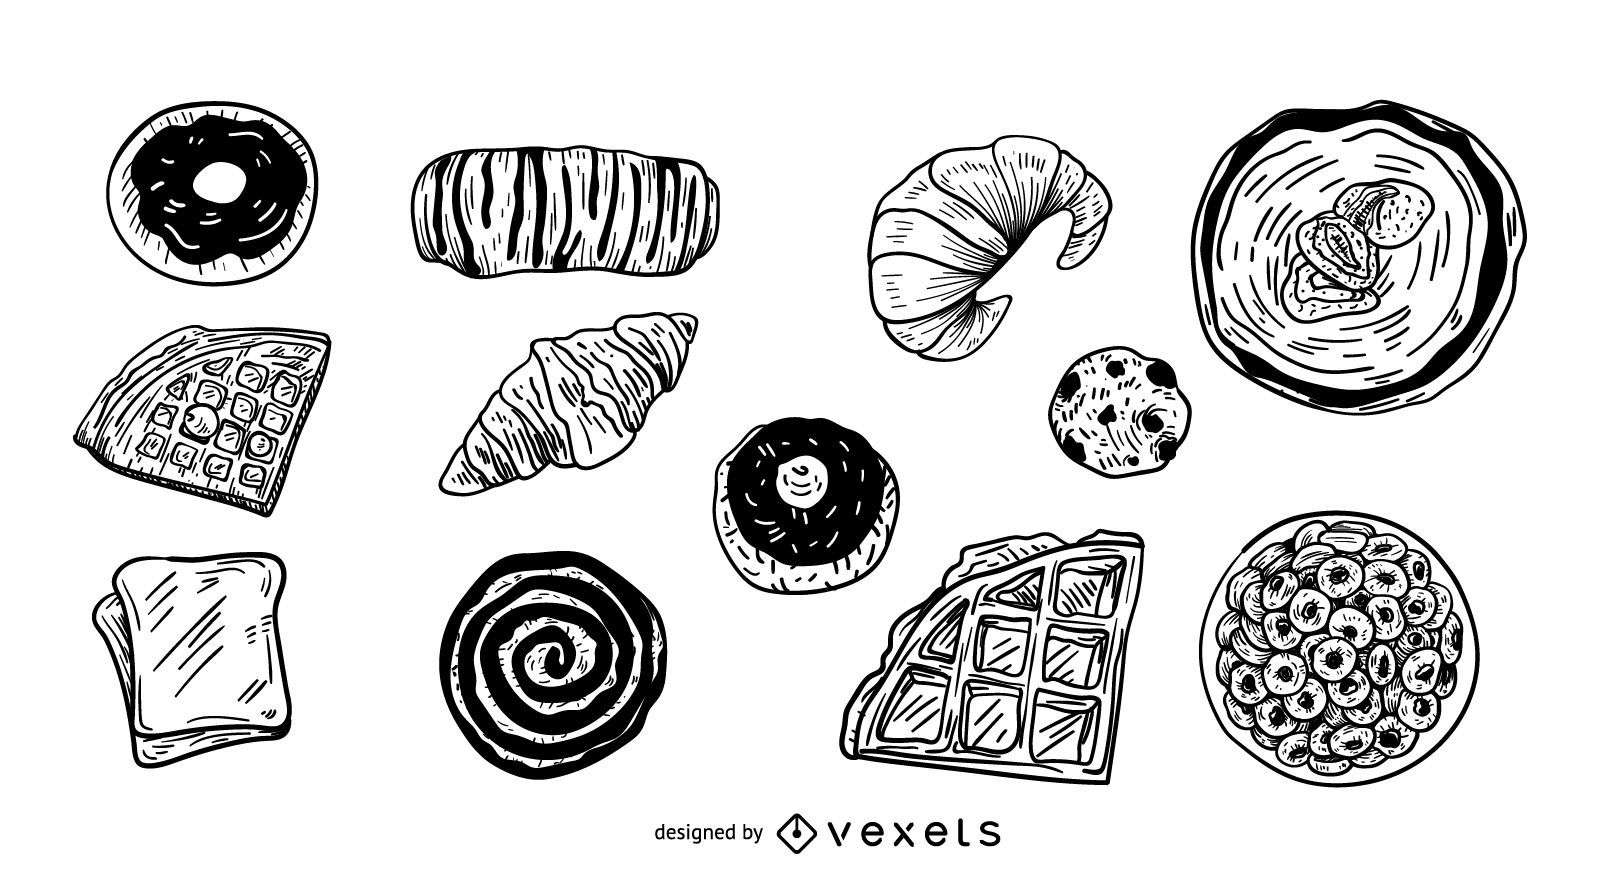 Desserts illustration set